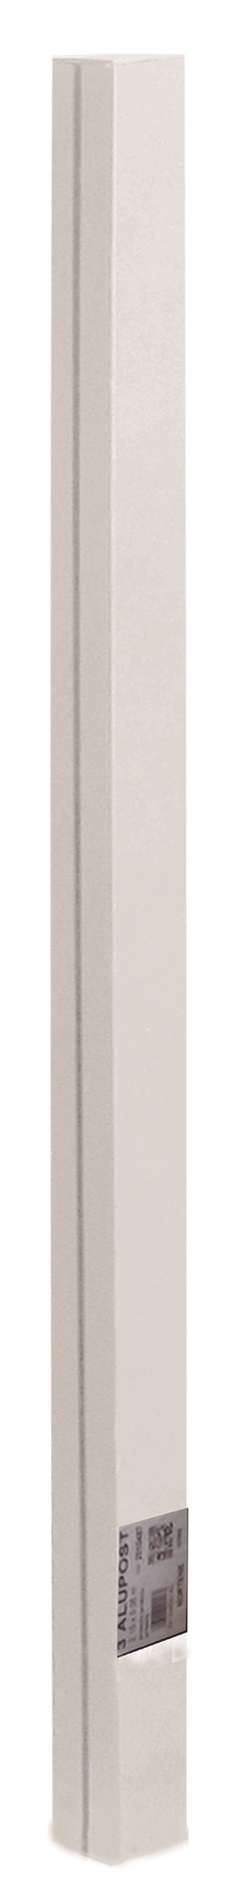 Aluminiumpfosten zur Befestigung von Mosaik/Privatplatten Alupost Weiß 215 cm